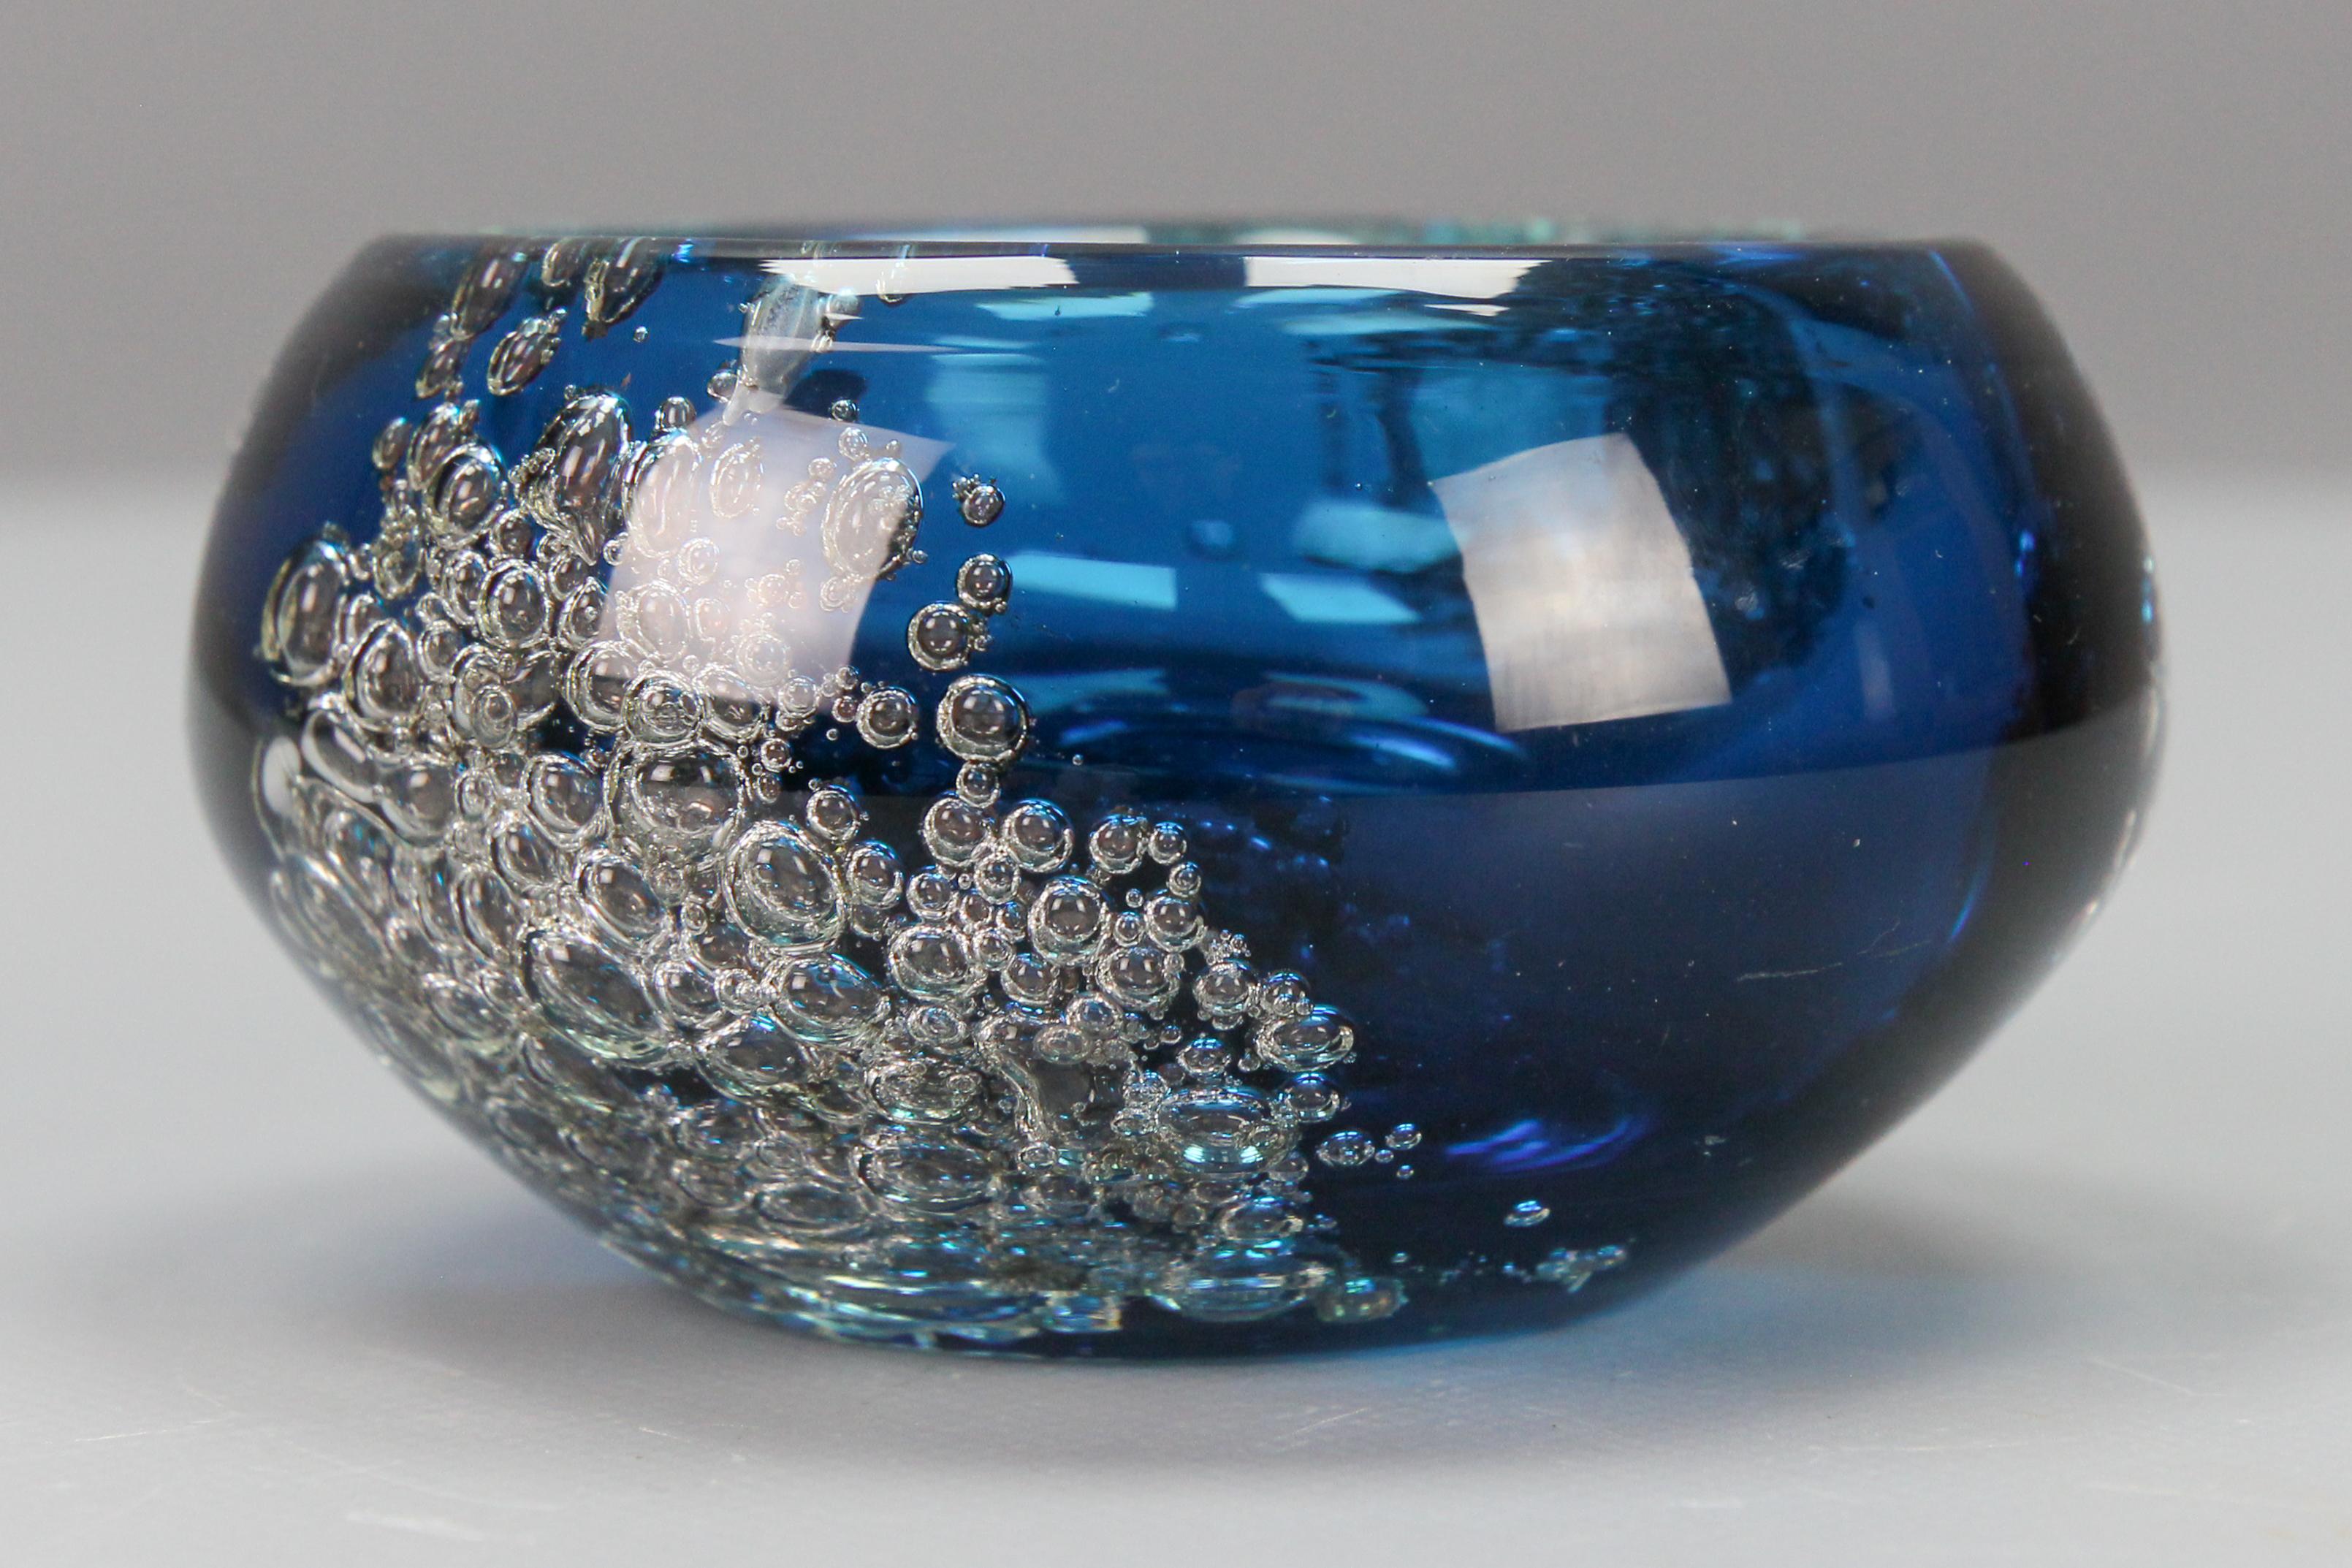 Petit bol en verre bleu bullé de Zwiesel, Allemagne, années 1970.
Un adorable bol décoratif en verre bleu avec une belle inclusion de bulles. 
En bon état avec de légers signes de vieillissement.
Dimensions : hauteur : 6 cm / 2.36 in ; diamètre : 10